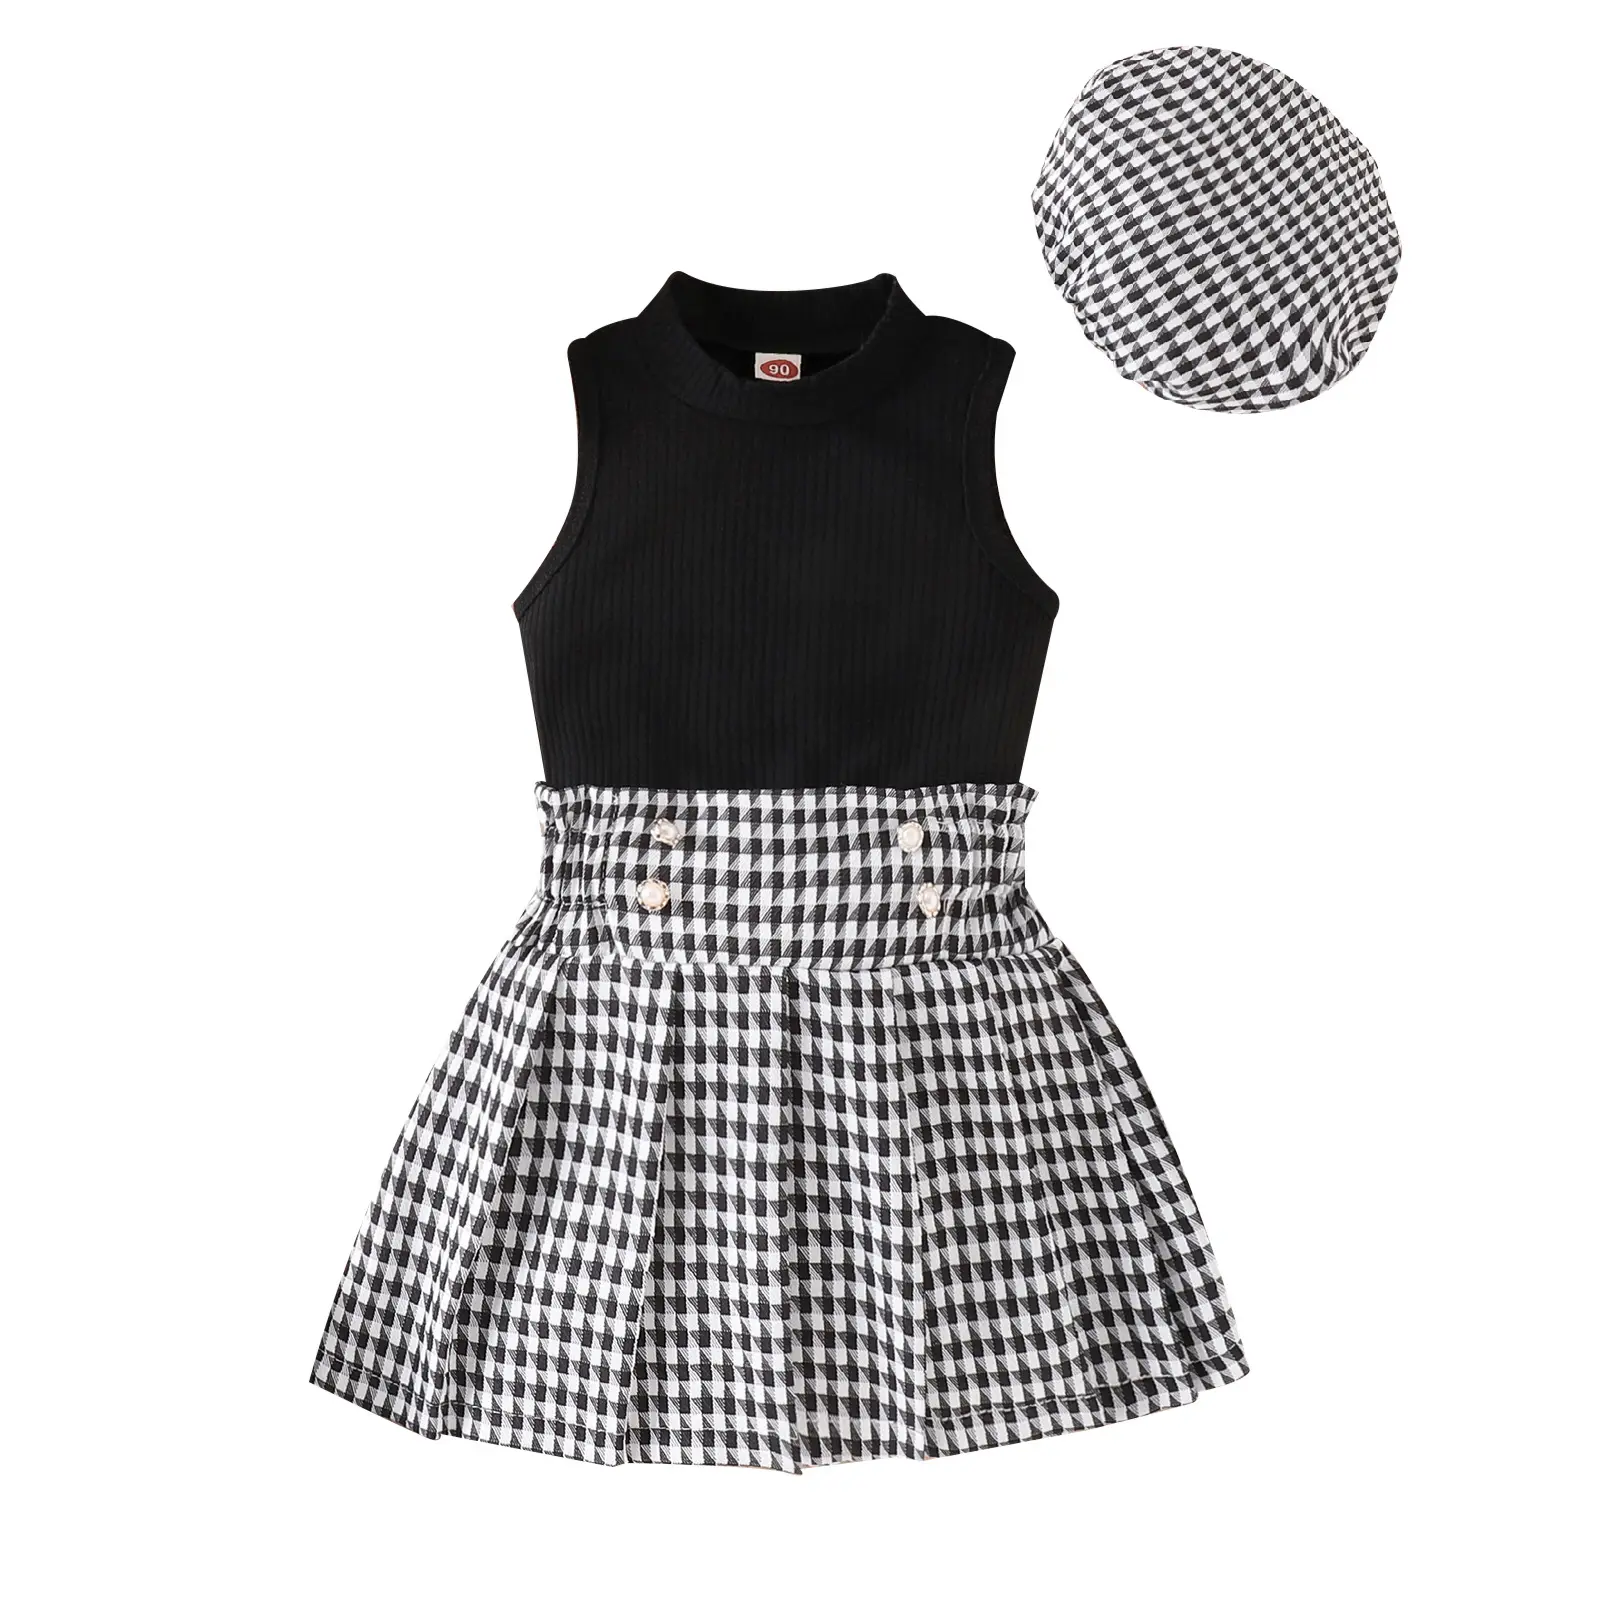 नई डिज़ाइन वाली शिशु शिशु लड़कियों के लिए ग्रीष्मकालीन बुना हुआ टॉप स्कर्ट टोपी के साथ 3 पीस सेट बच्चों के कपड़े बच्चों के बच्चों के लिए छोटी लड़कियों के कपड़े